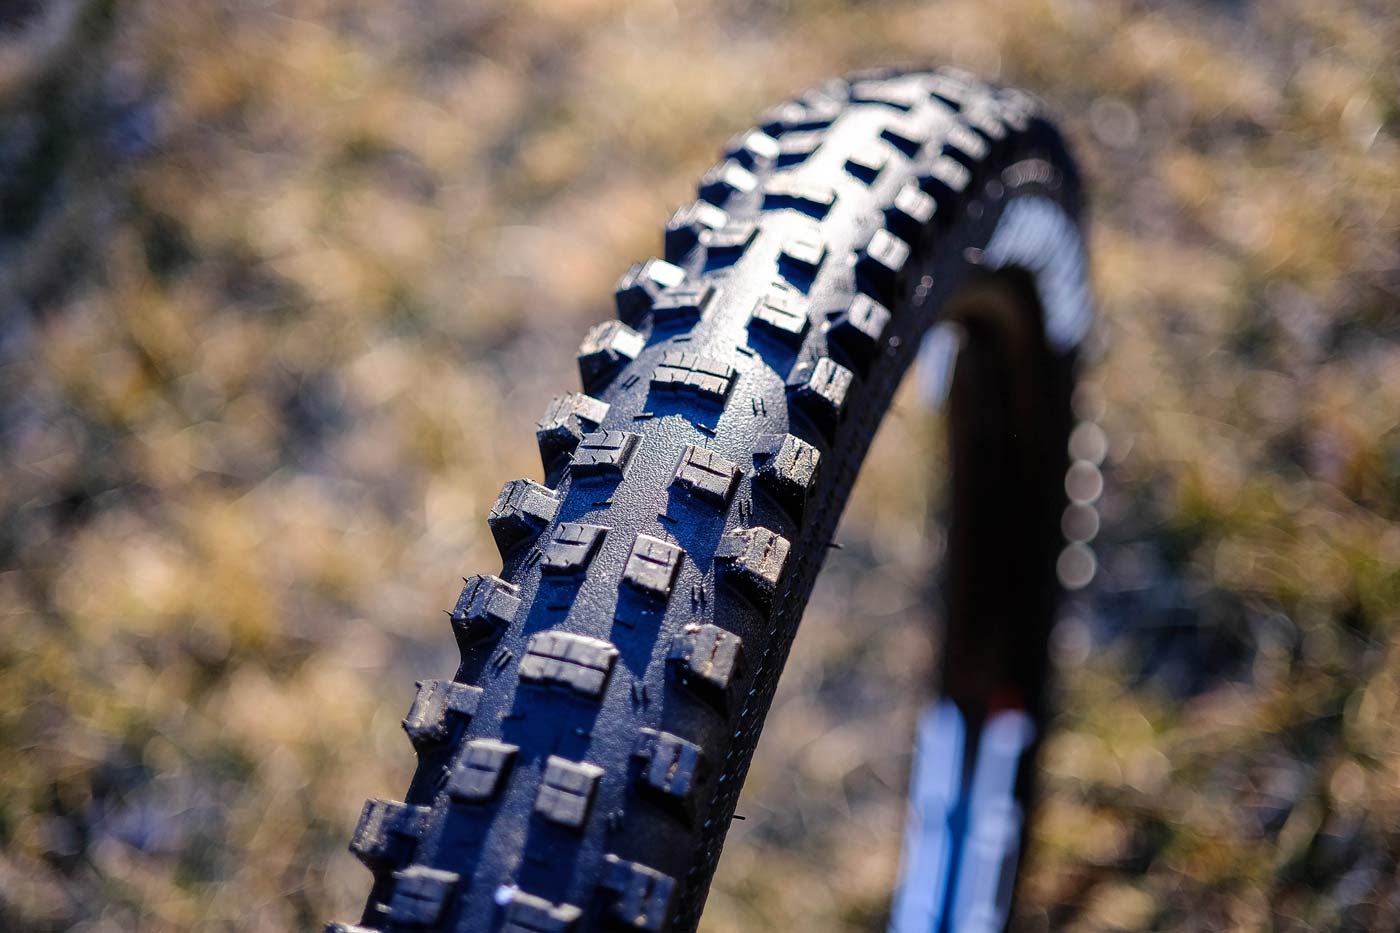 2018 Goodyear Newton ST Trail DH downhill mountain bike tires